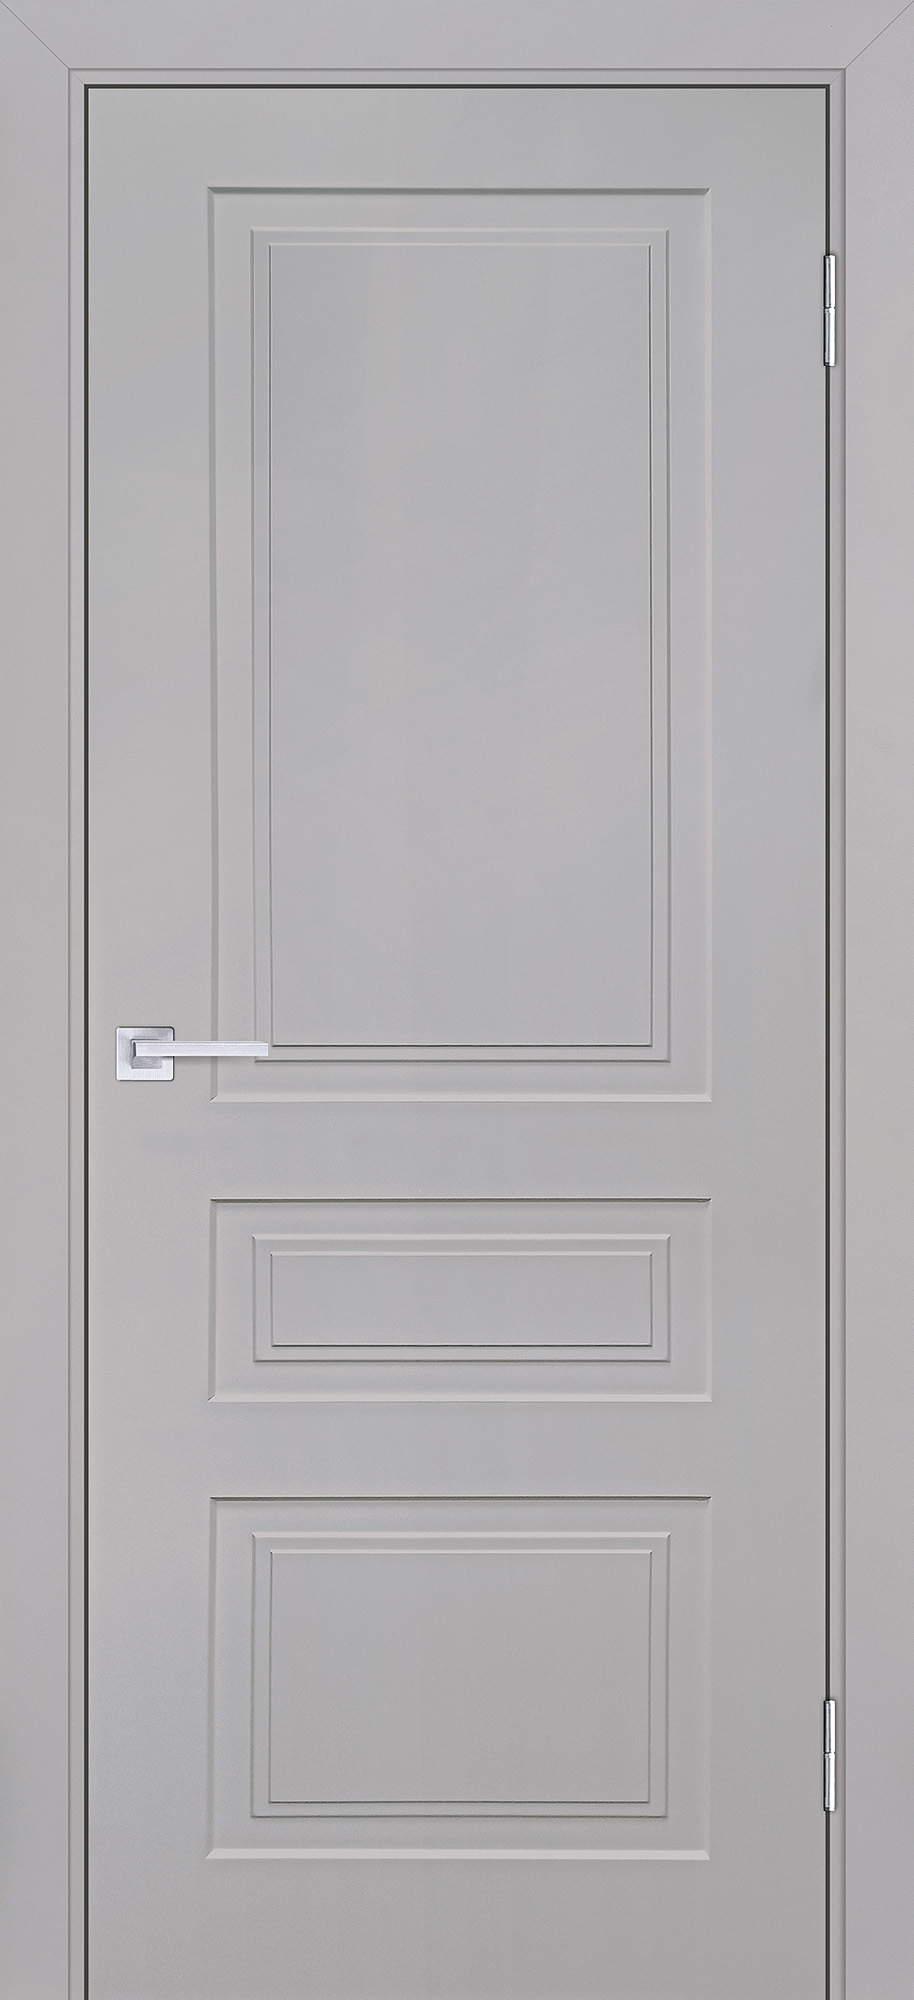 Двери крашеные (Эмаль) ТЕКОНА Смальта-Лайн 05 глухое Агат ral 7044 размер 200 х 80 см. артикул F0000093238